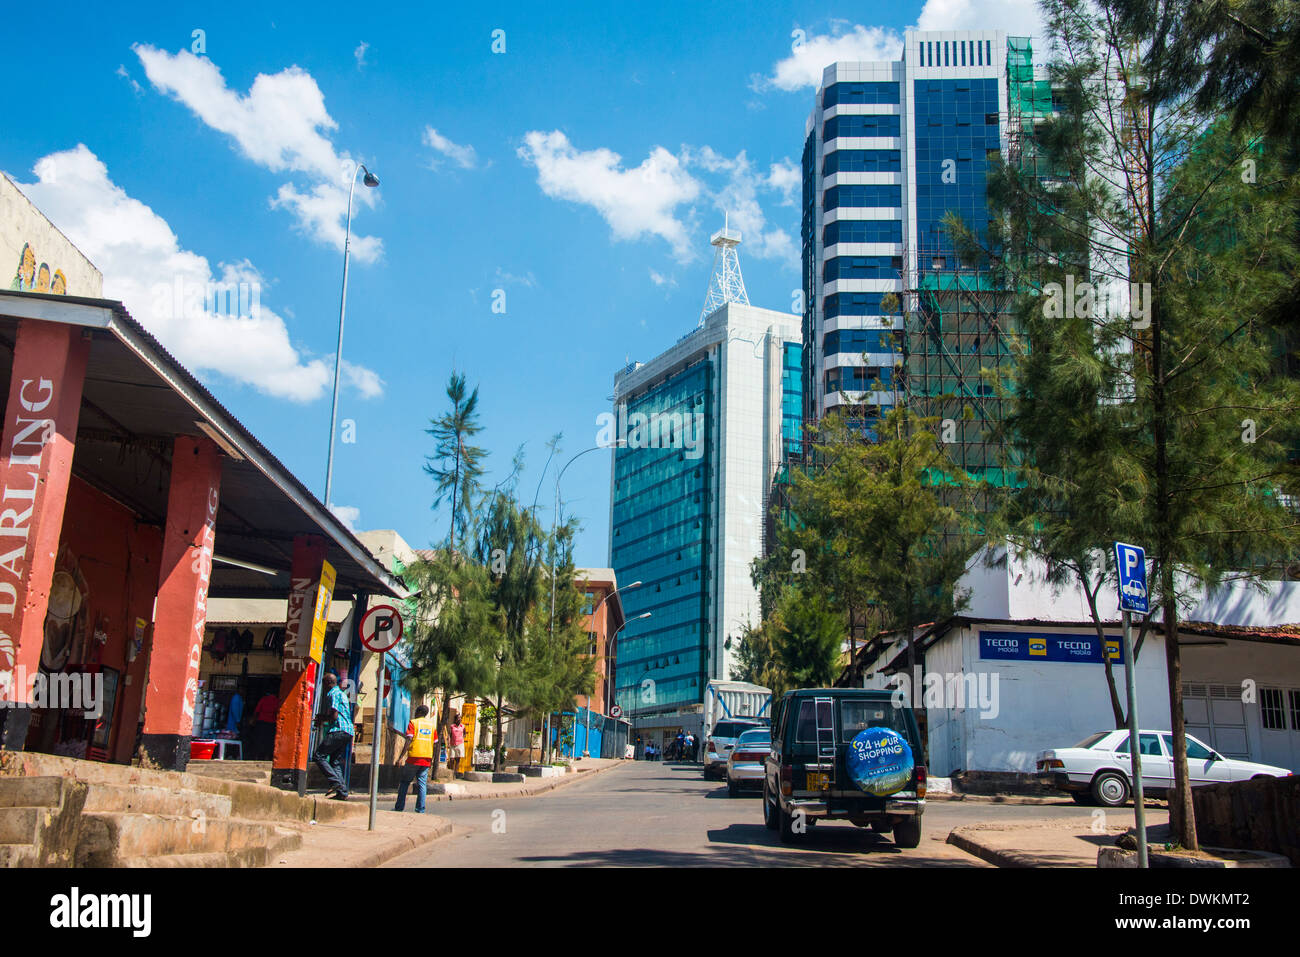 Downtown Kigali, Rwanda, Africa Stock Photo - Alamy